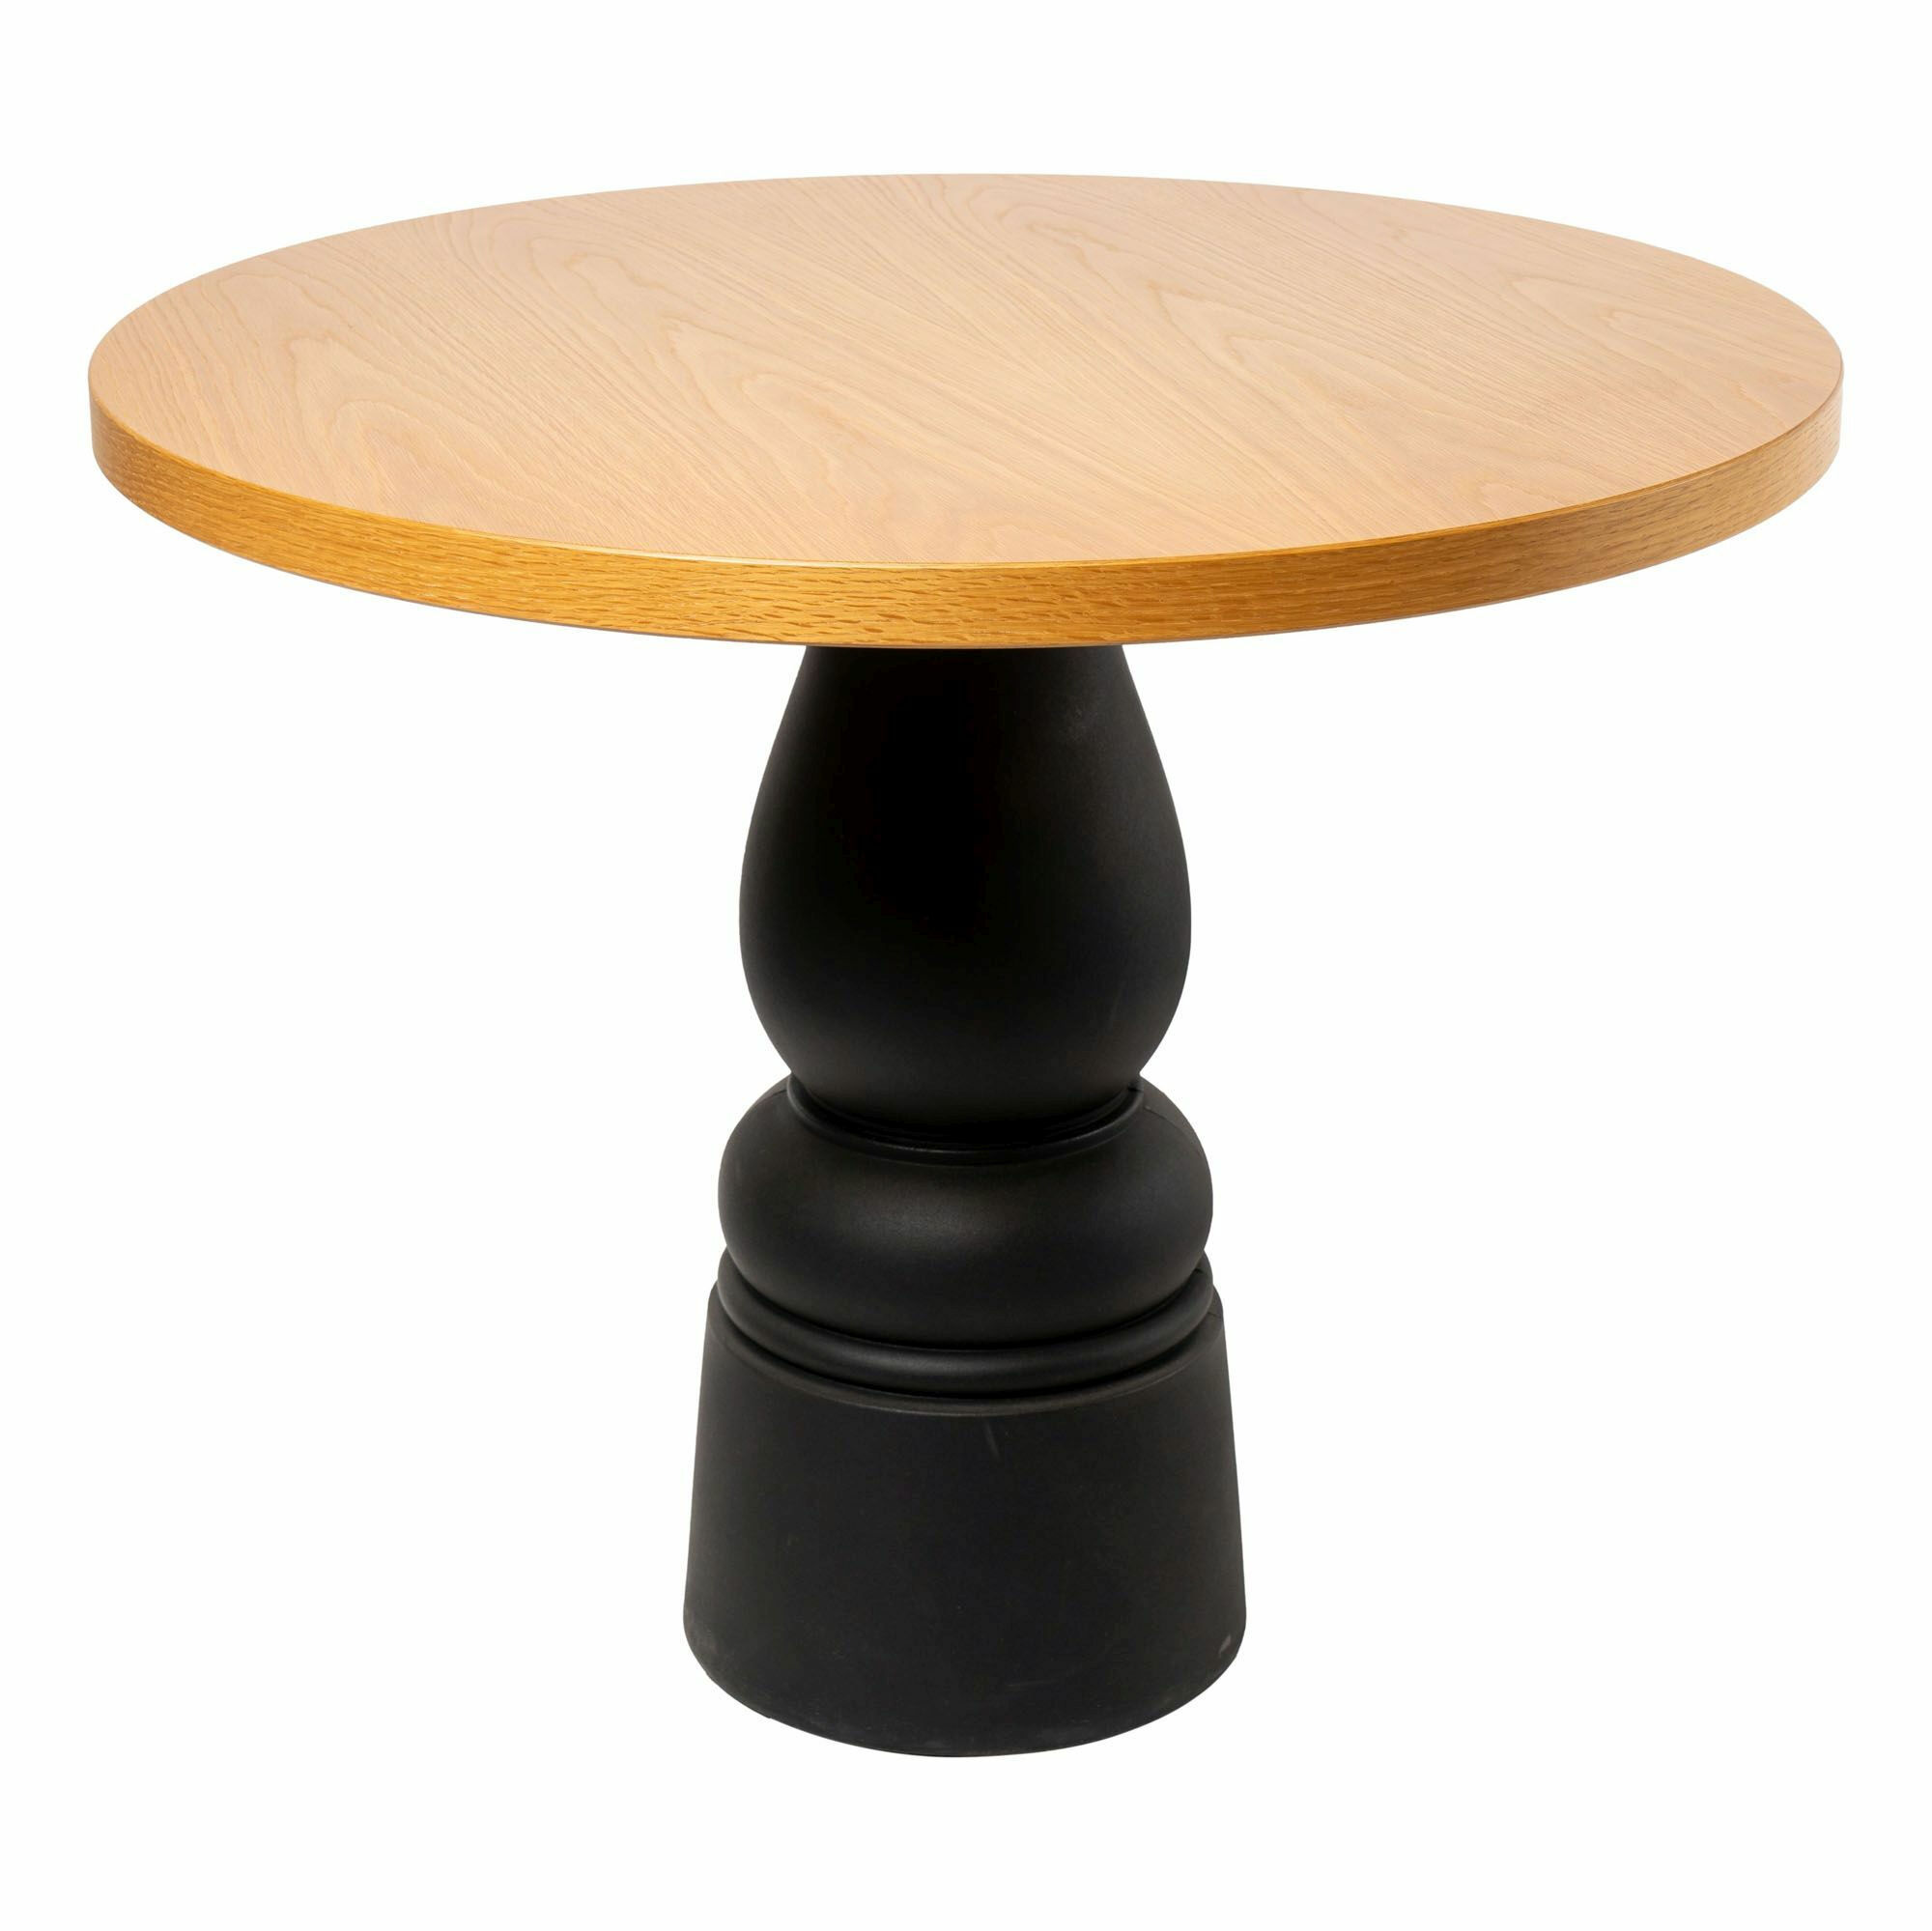 moooi-beistelltisch-container-table-platte-eiche-natur-geoelt-gestell-kunststoff-schwarz-mf-0006095